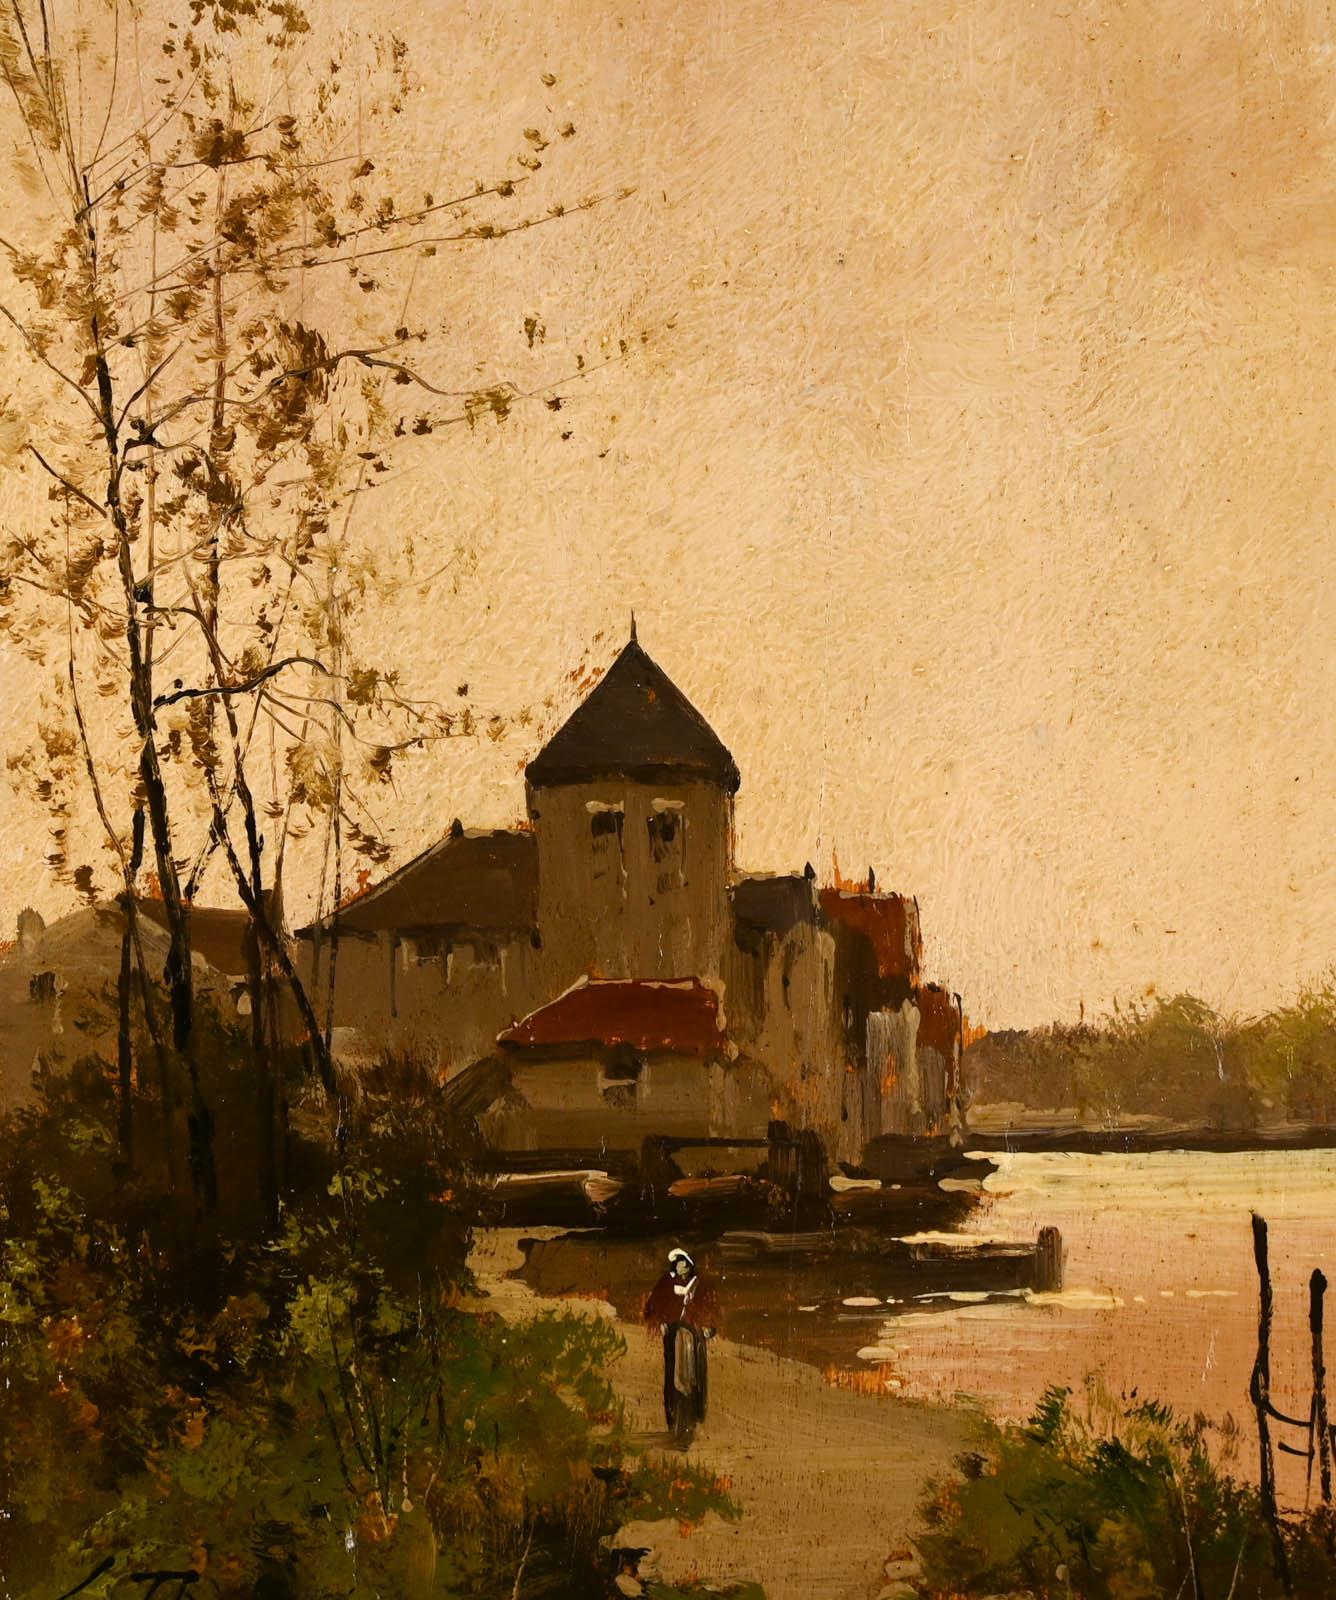 Village au bord de l'eau - Painting by Eugene Galien-Laloue